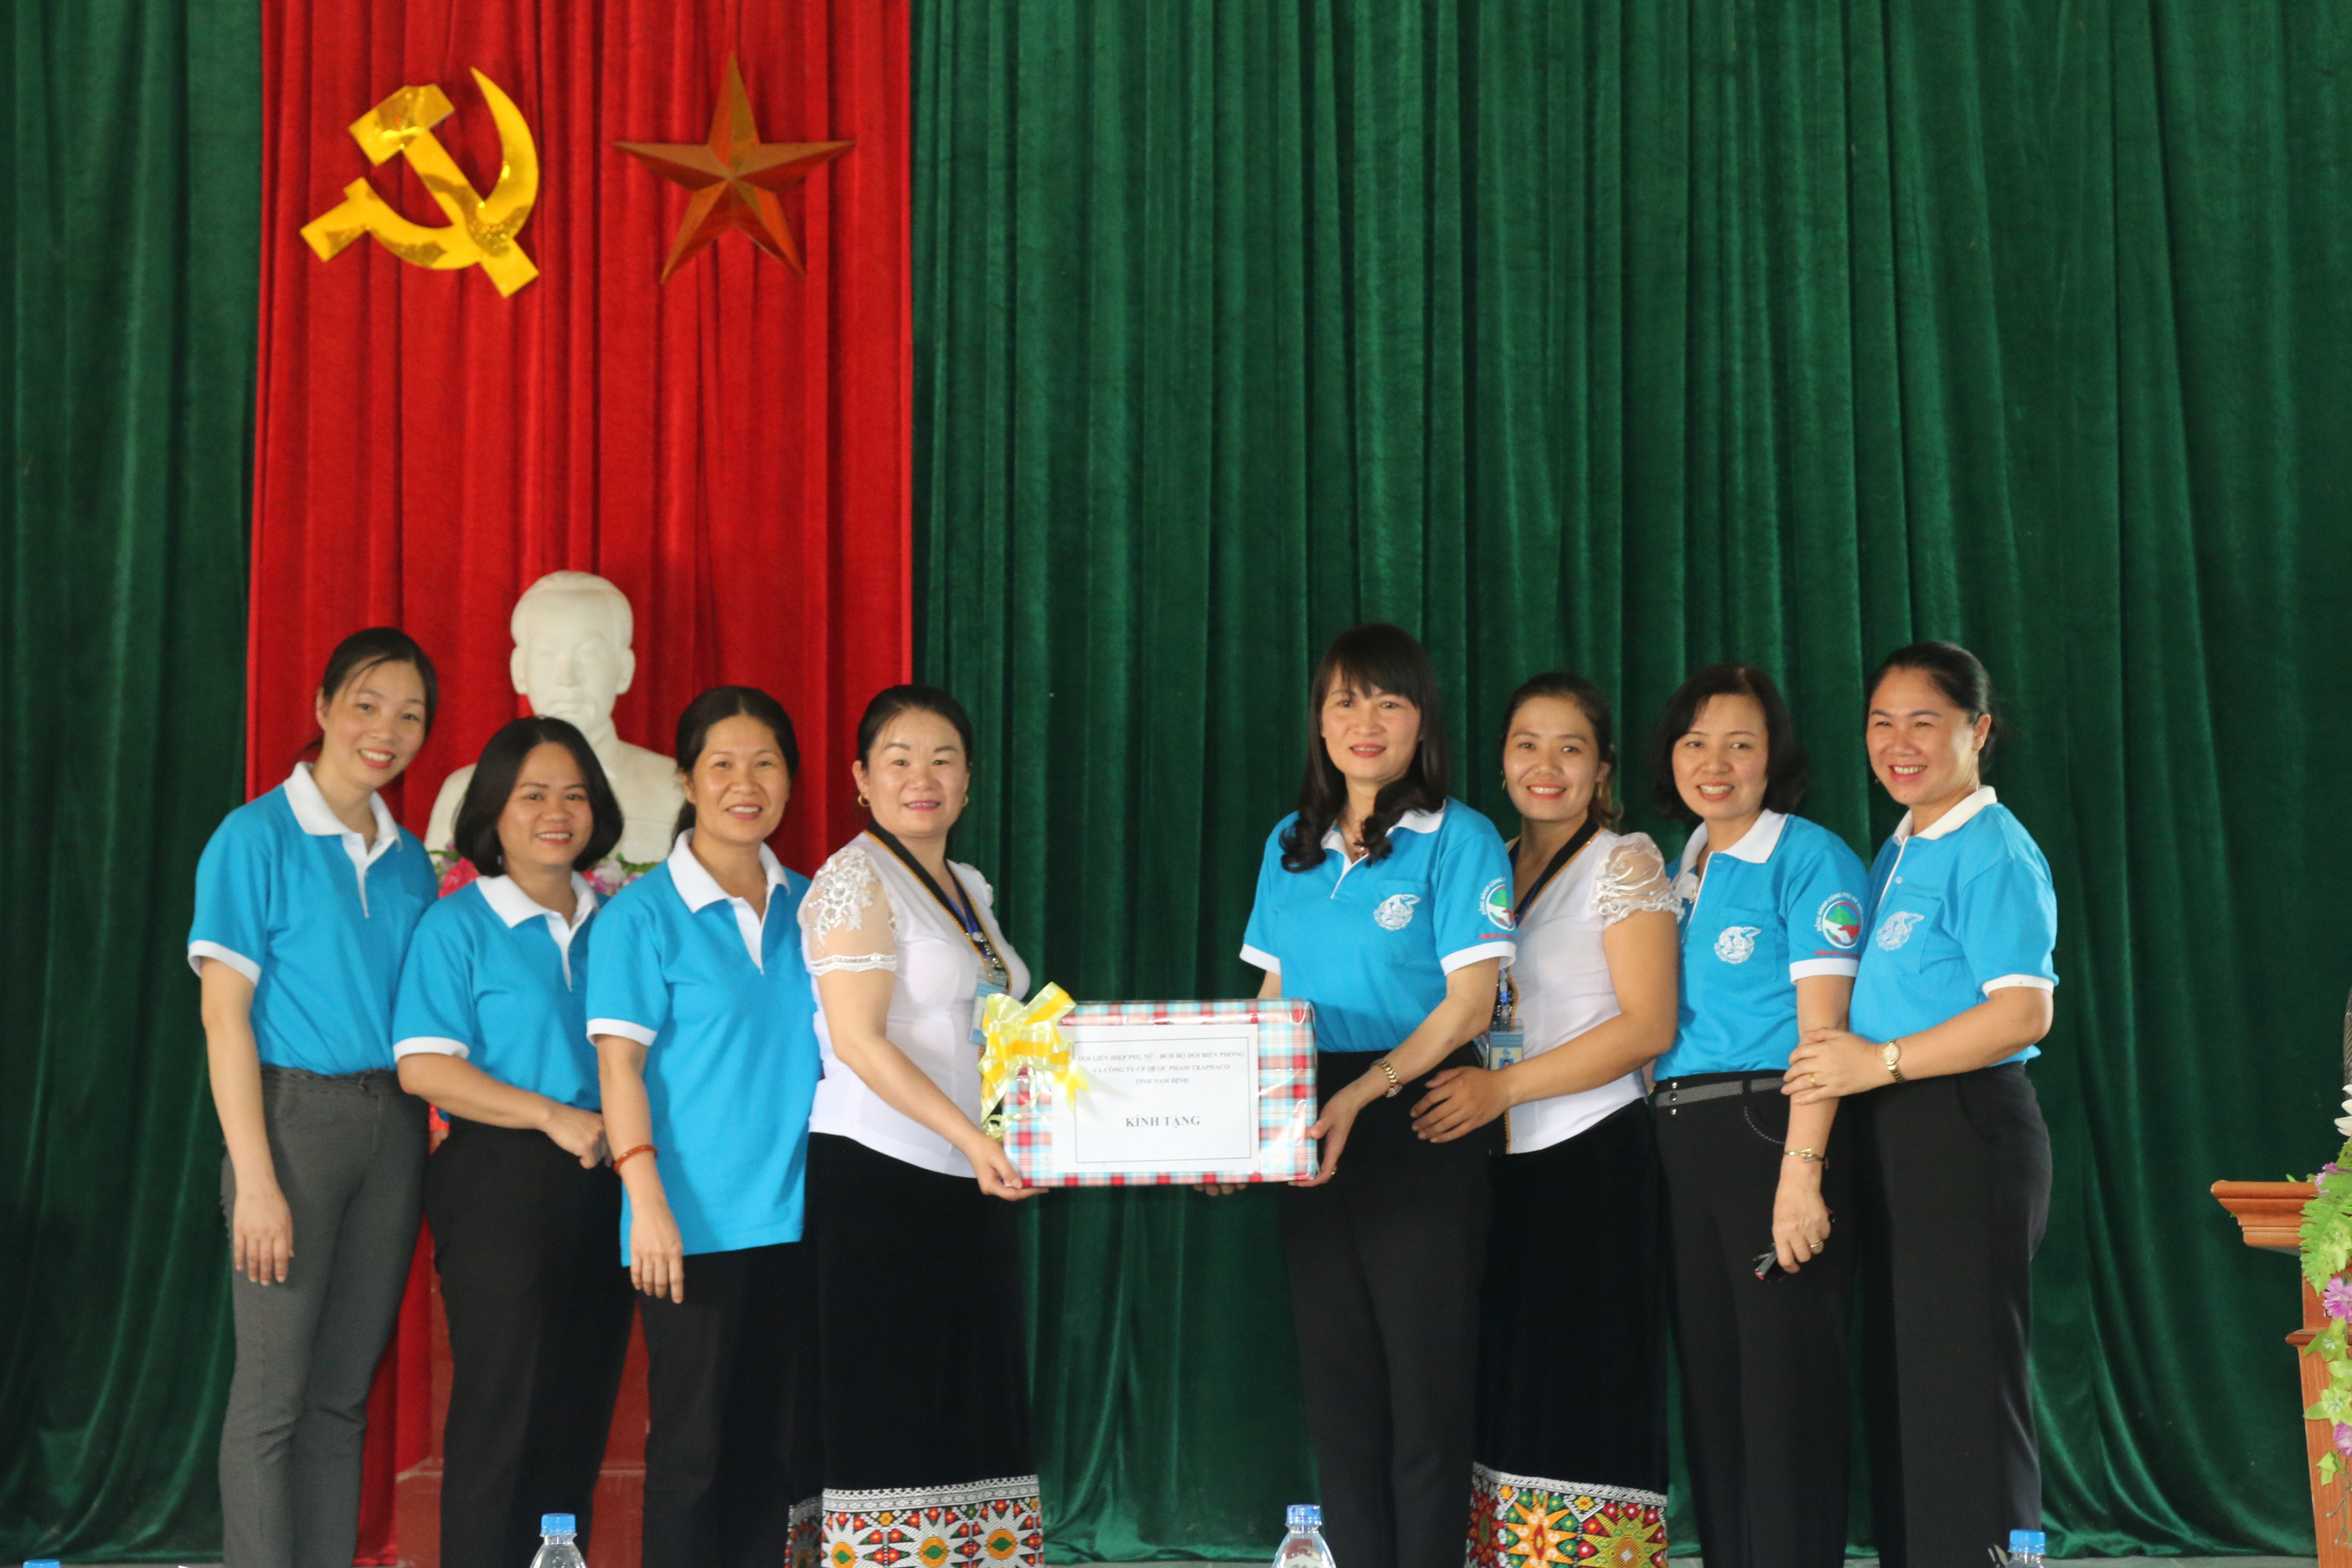 Hội LHPN tỉnh Nam Định đã lựa chọn Nghệ An là địa phương để đồng hành trong suốt chương trình và trực tiếp là xã Môn Sơn, huyện Con Cuông.